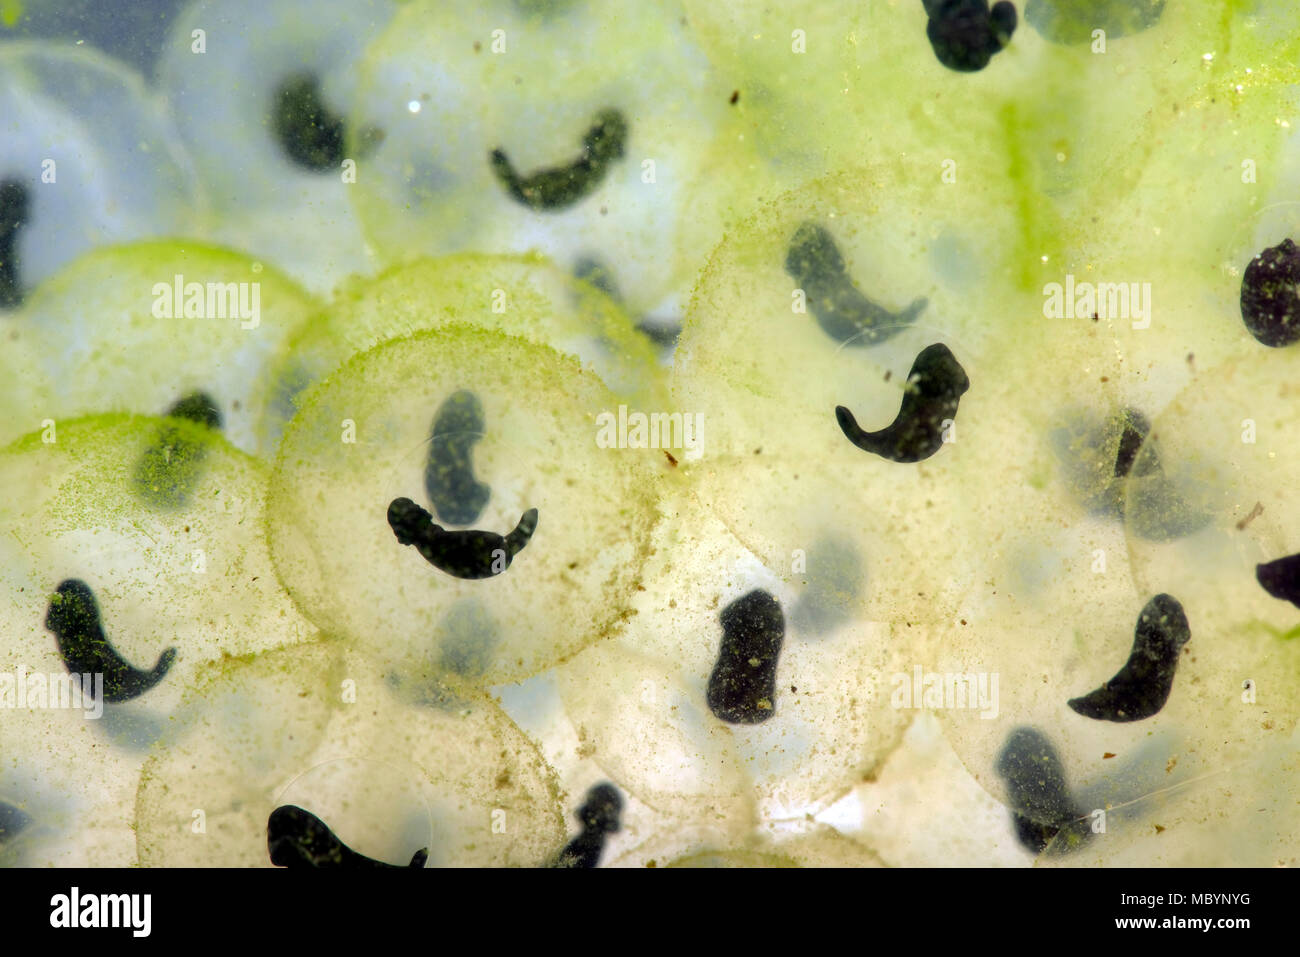 Comune europeo, di rana temporaria Rana, frogspawn con sviluppo di girini conformata come una "virgola", Aprile Foto Stock